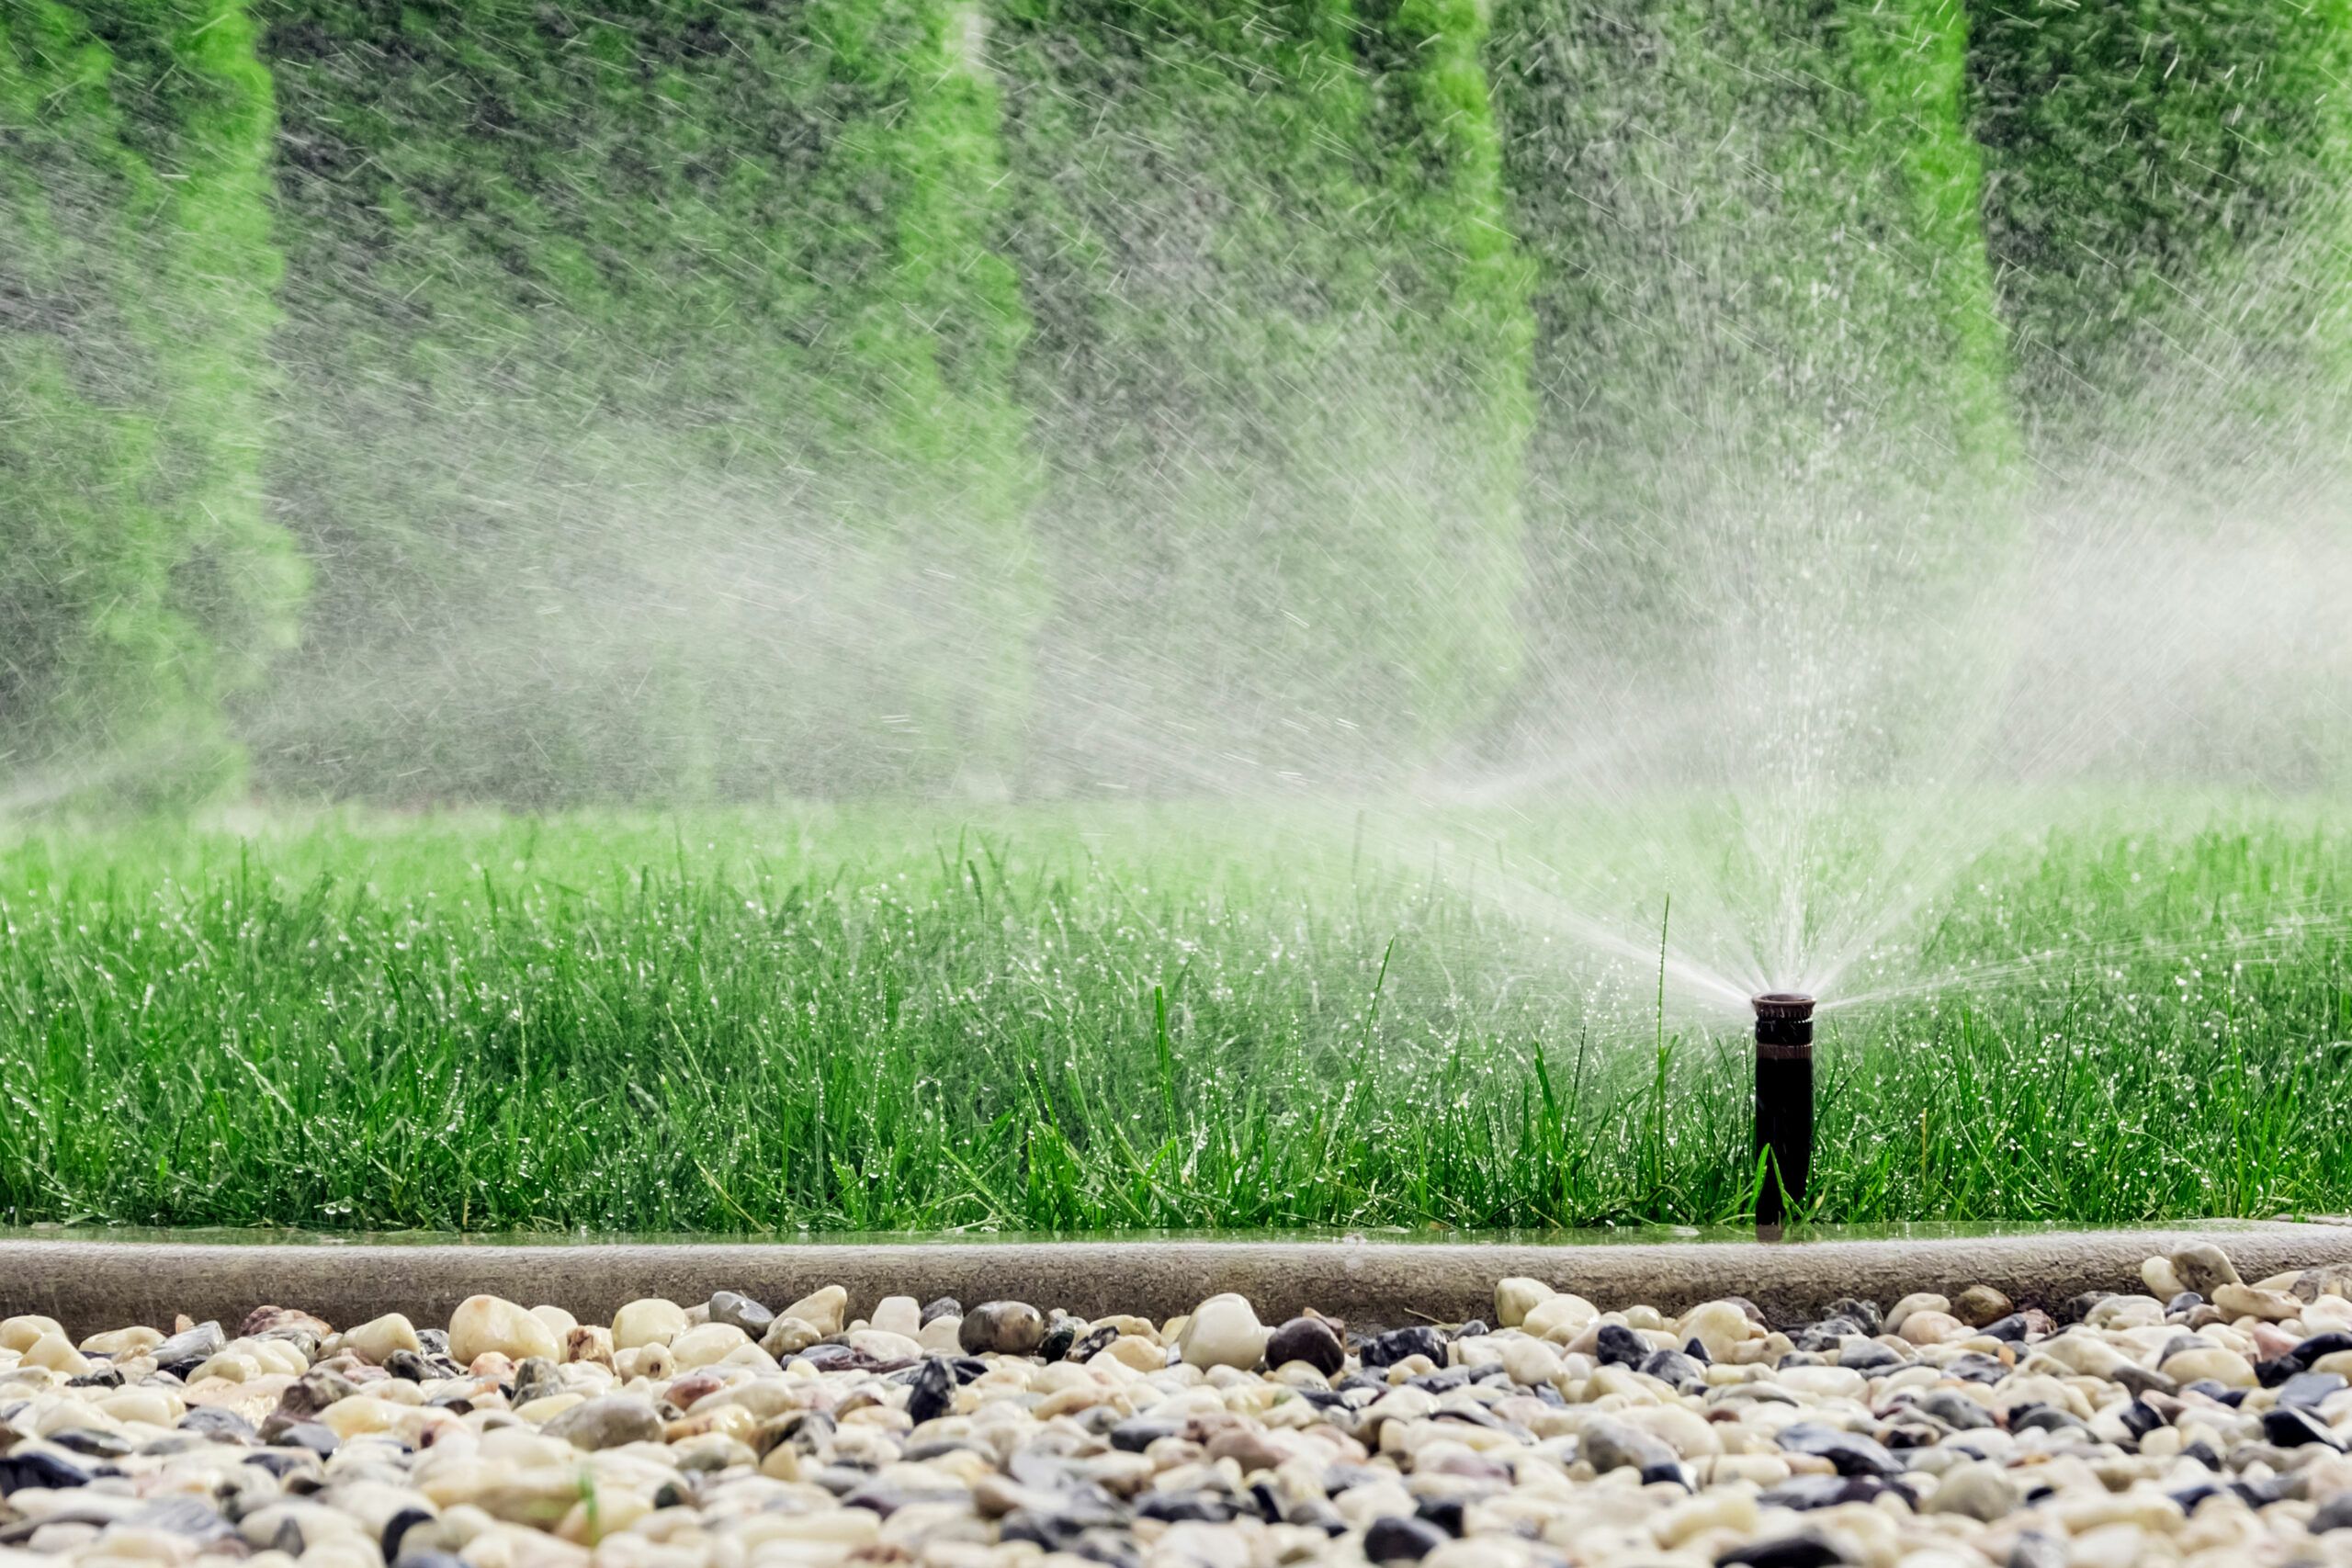 Choosing a Lawn Sprinkler System, Pioneer Underground